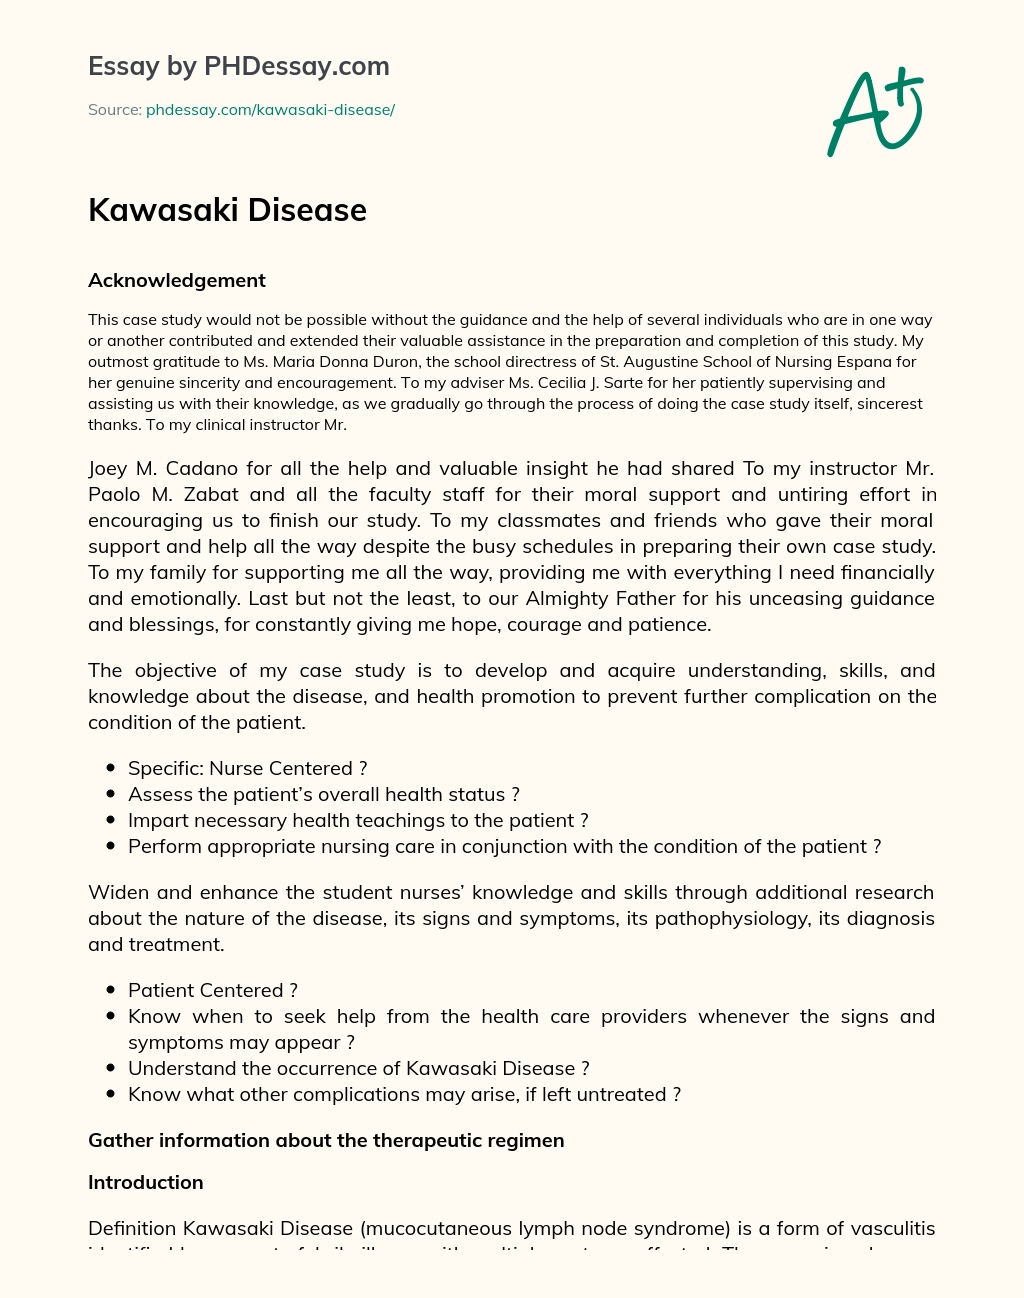 Kawasaki Disease essay